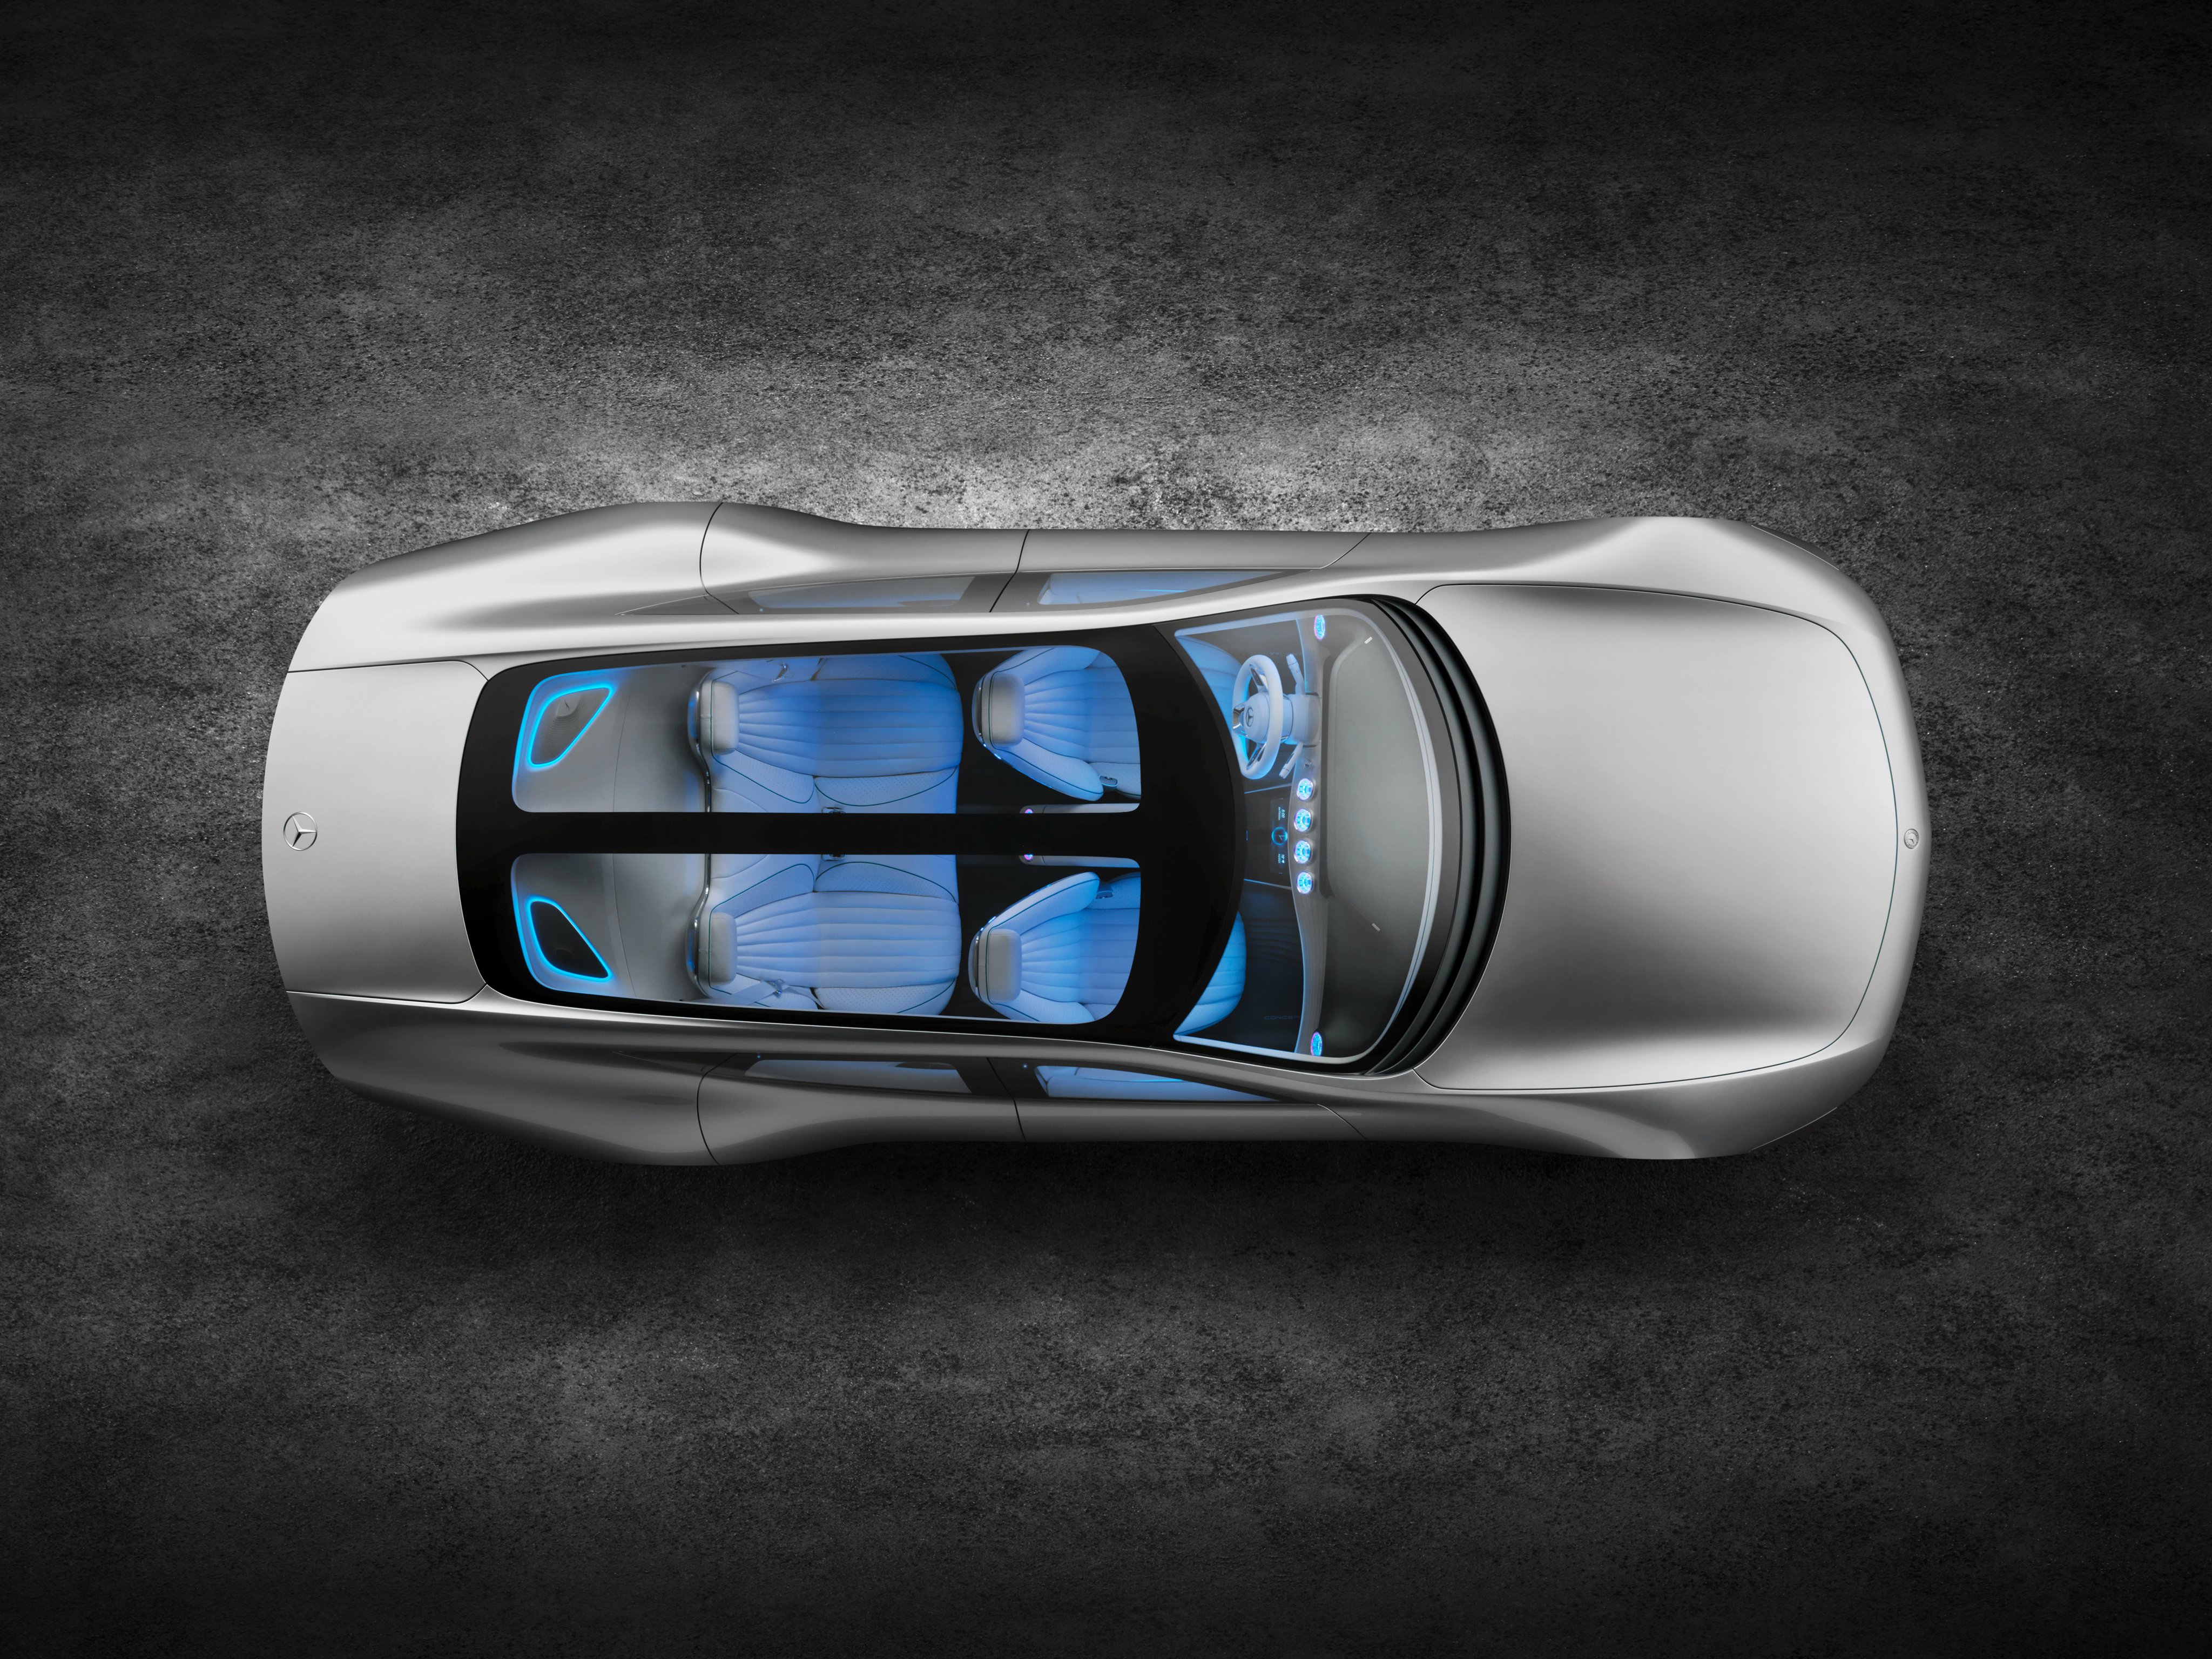 2015, Mercedes, Benz, Concept, Iaa, Supercar Wallpaper